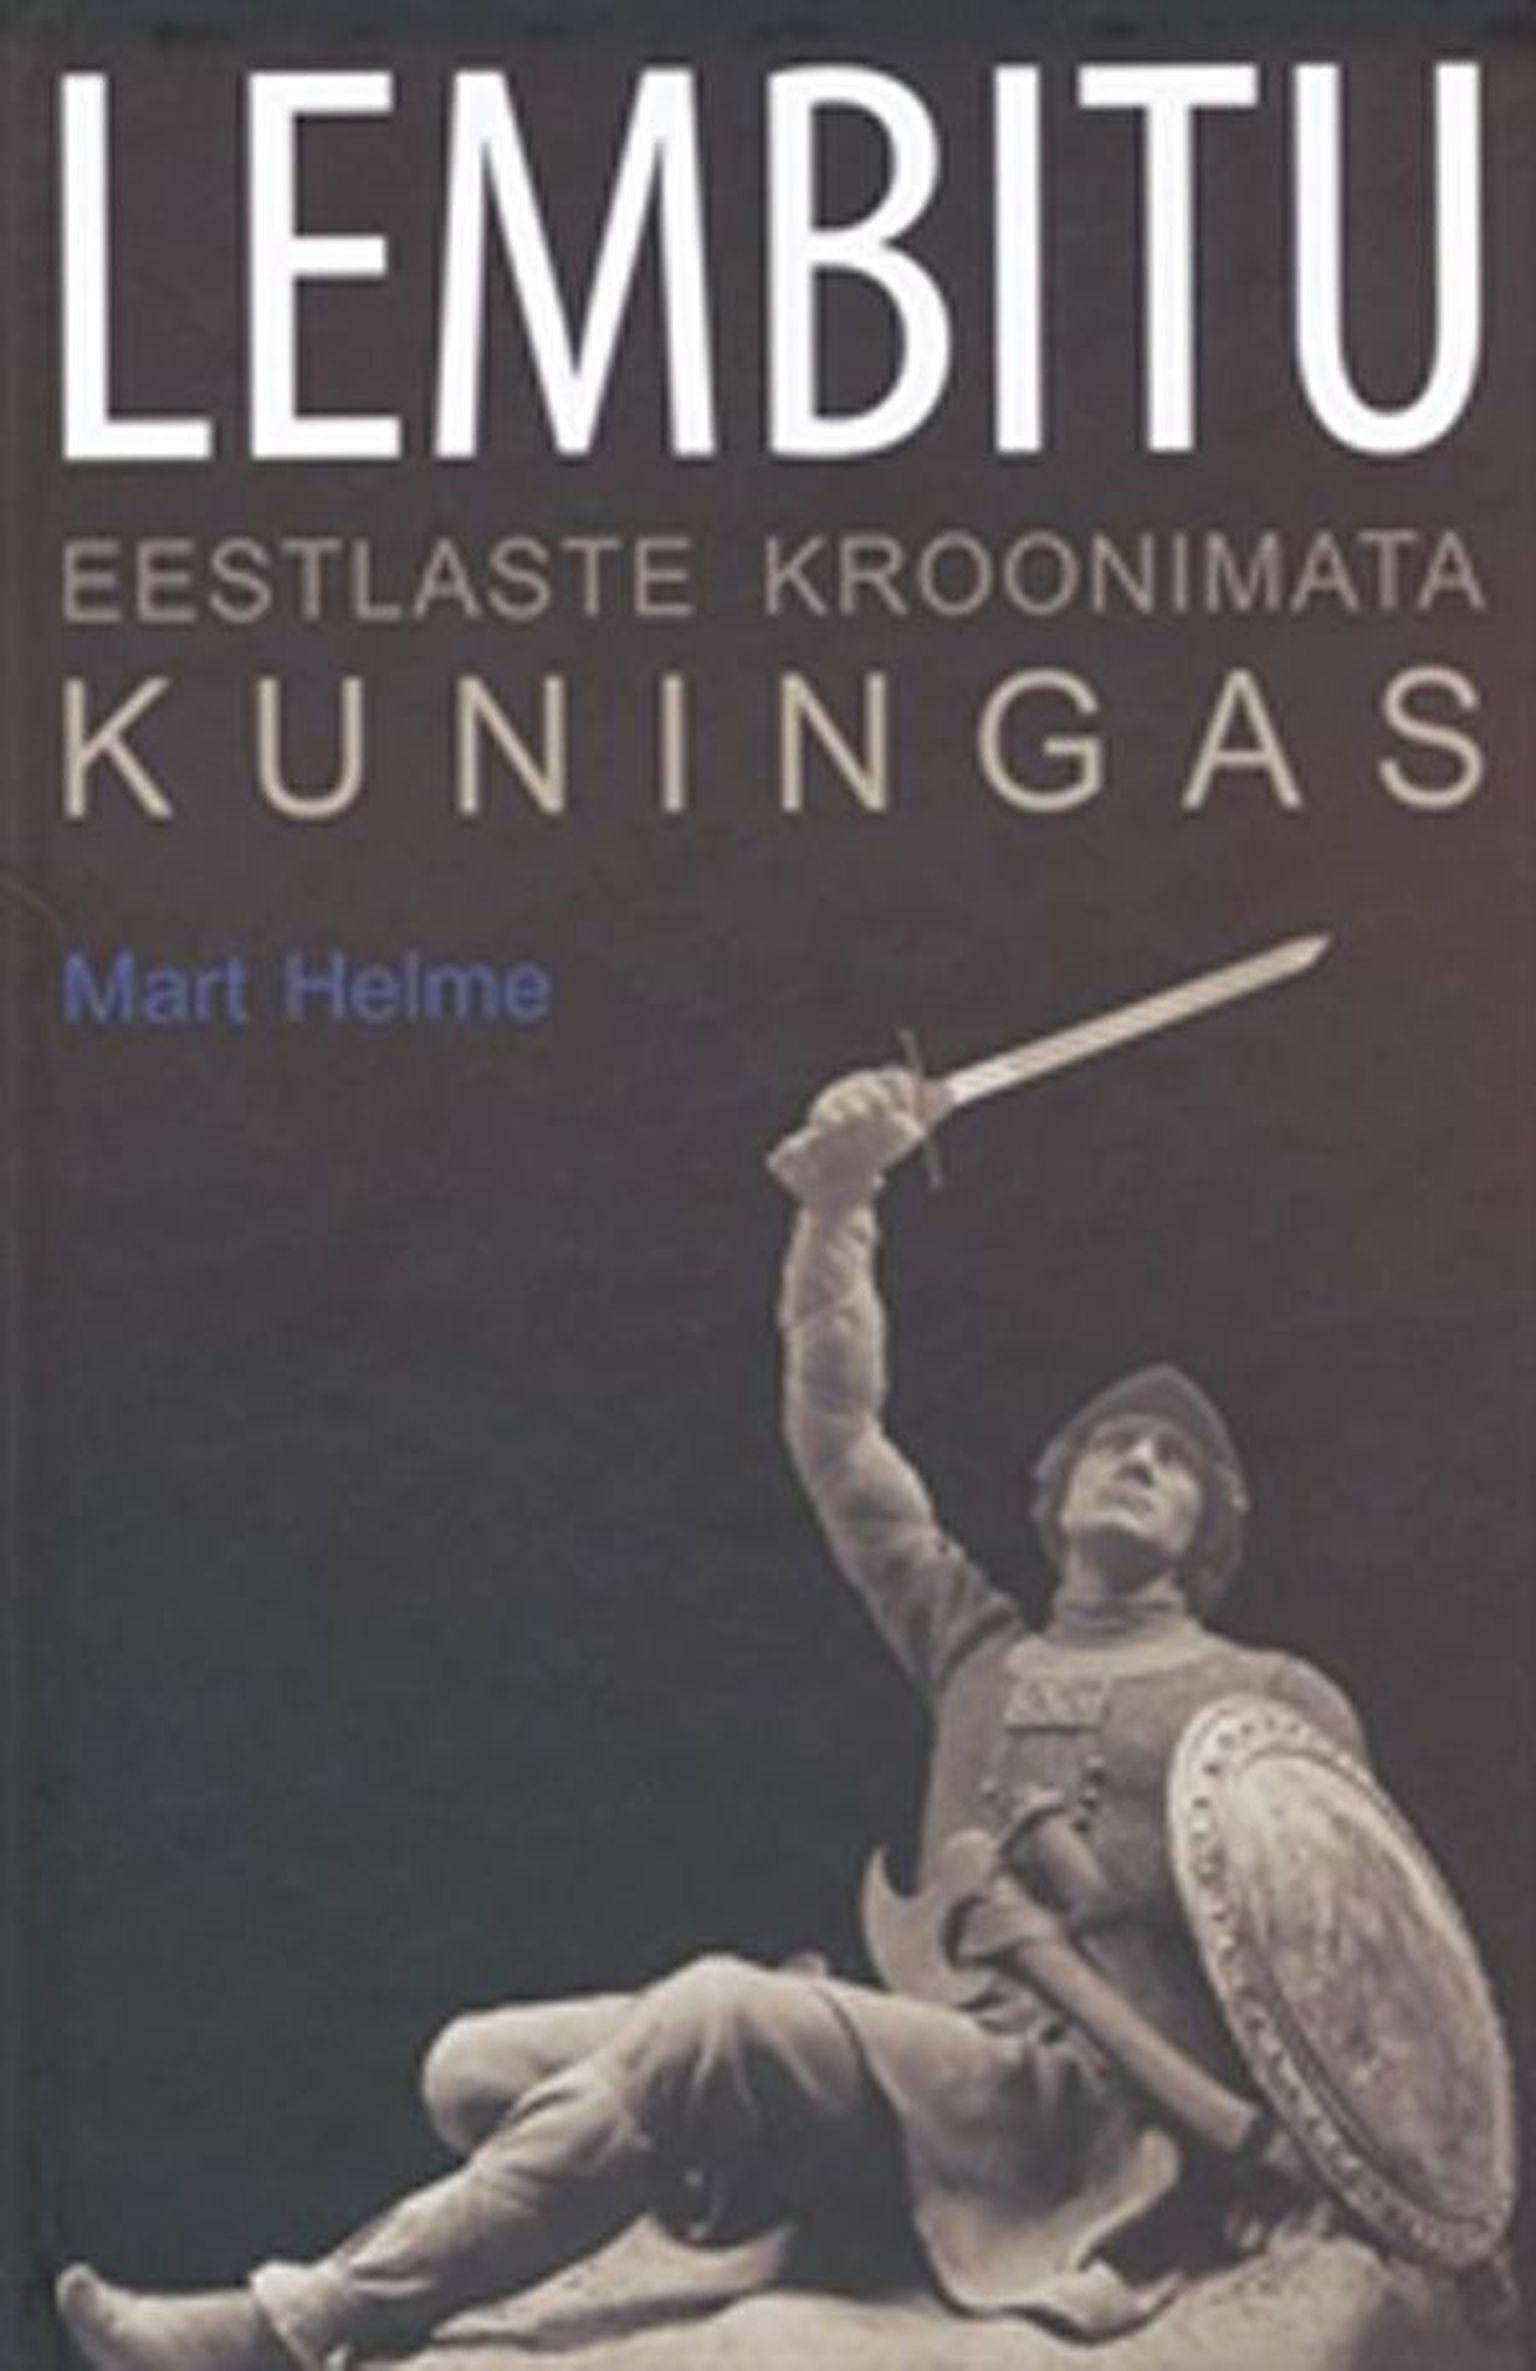 Raamat
Mart Helme
«Lembitu. Eestlaste kroonimata kuningas»
Kunst, 2010, 199 lk